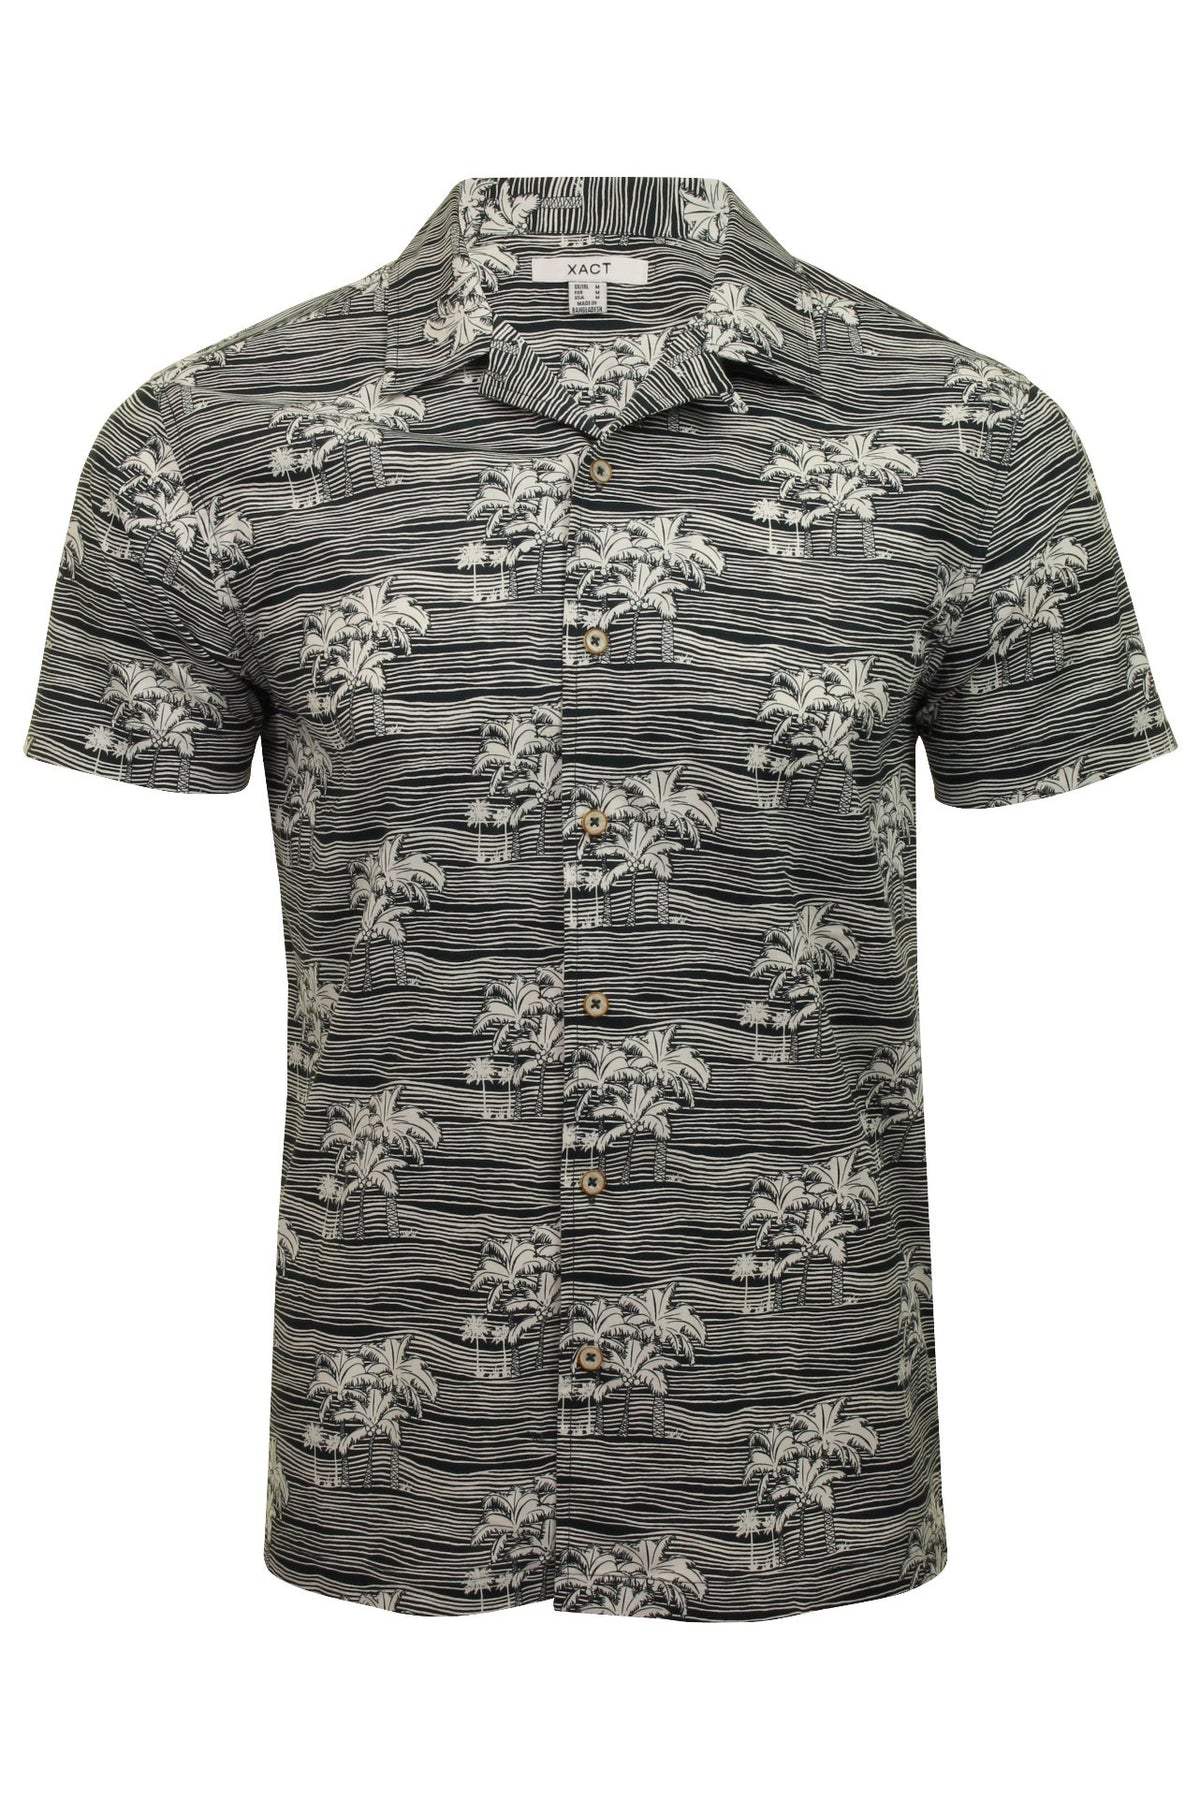 Xact Mens Floral Hawaiian Shirt  Short Sleeved, 01, Xsh1051, Navy Palm Tree